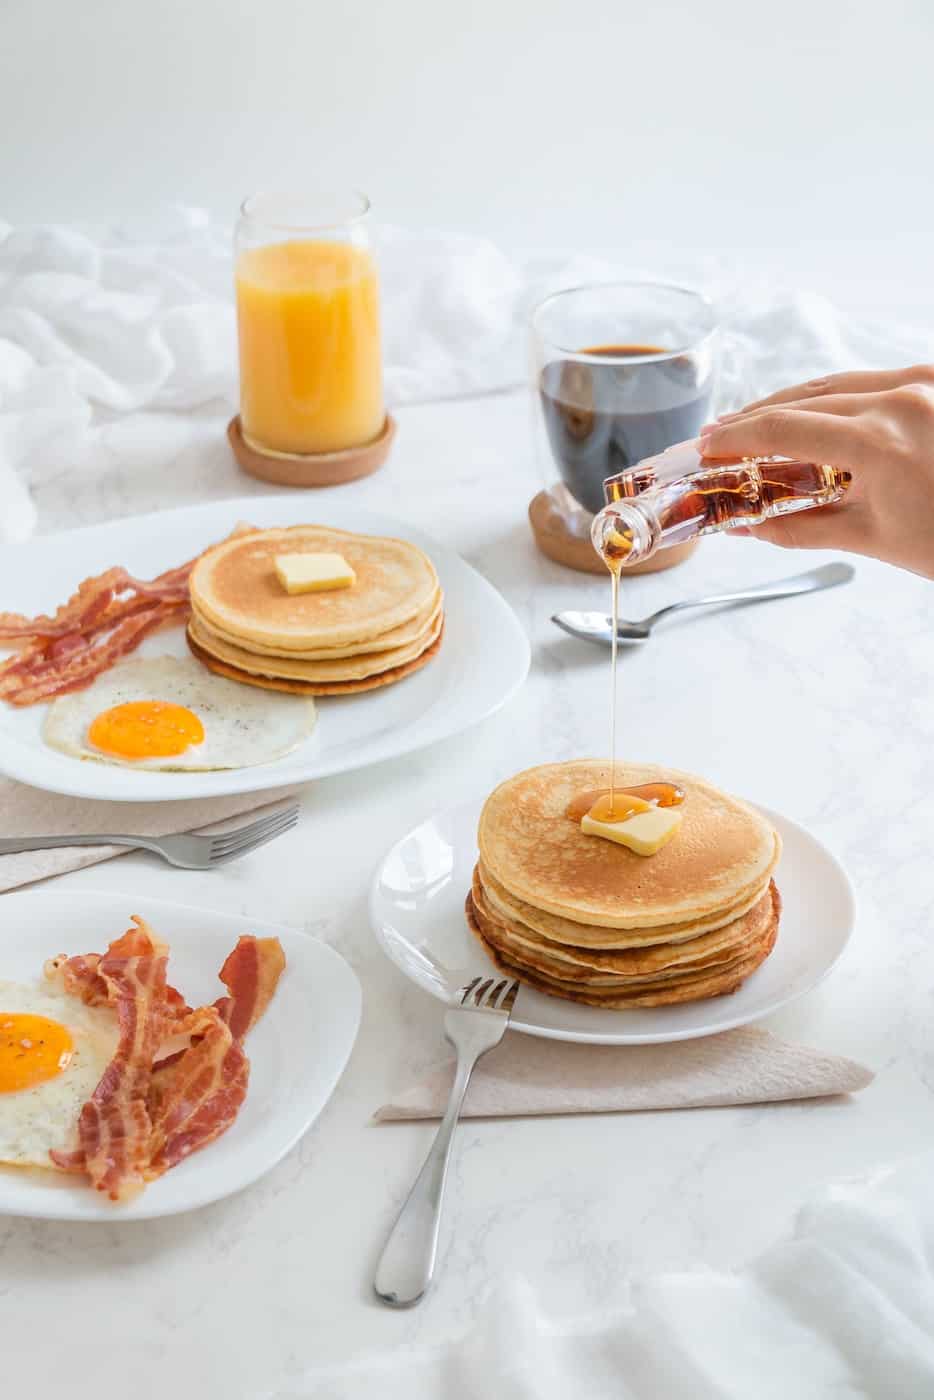 Frühstück mit Pancakes, Spiegelei, Bacon, Orangensaft und Kaffee. Auf die Pancakes wird Ahornsirup geschüttet.